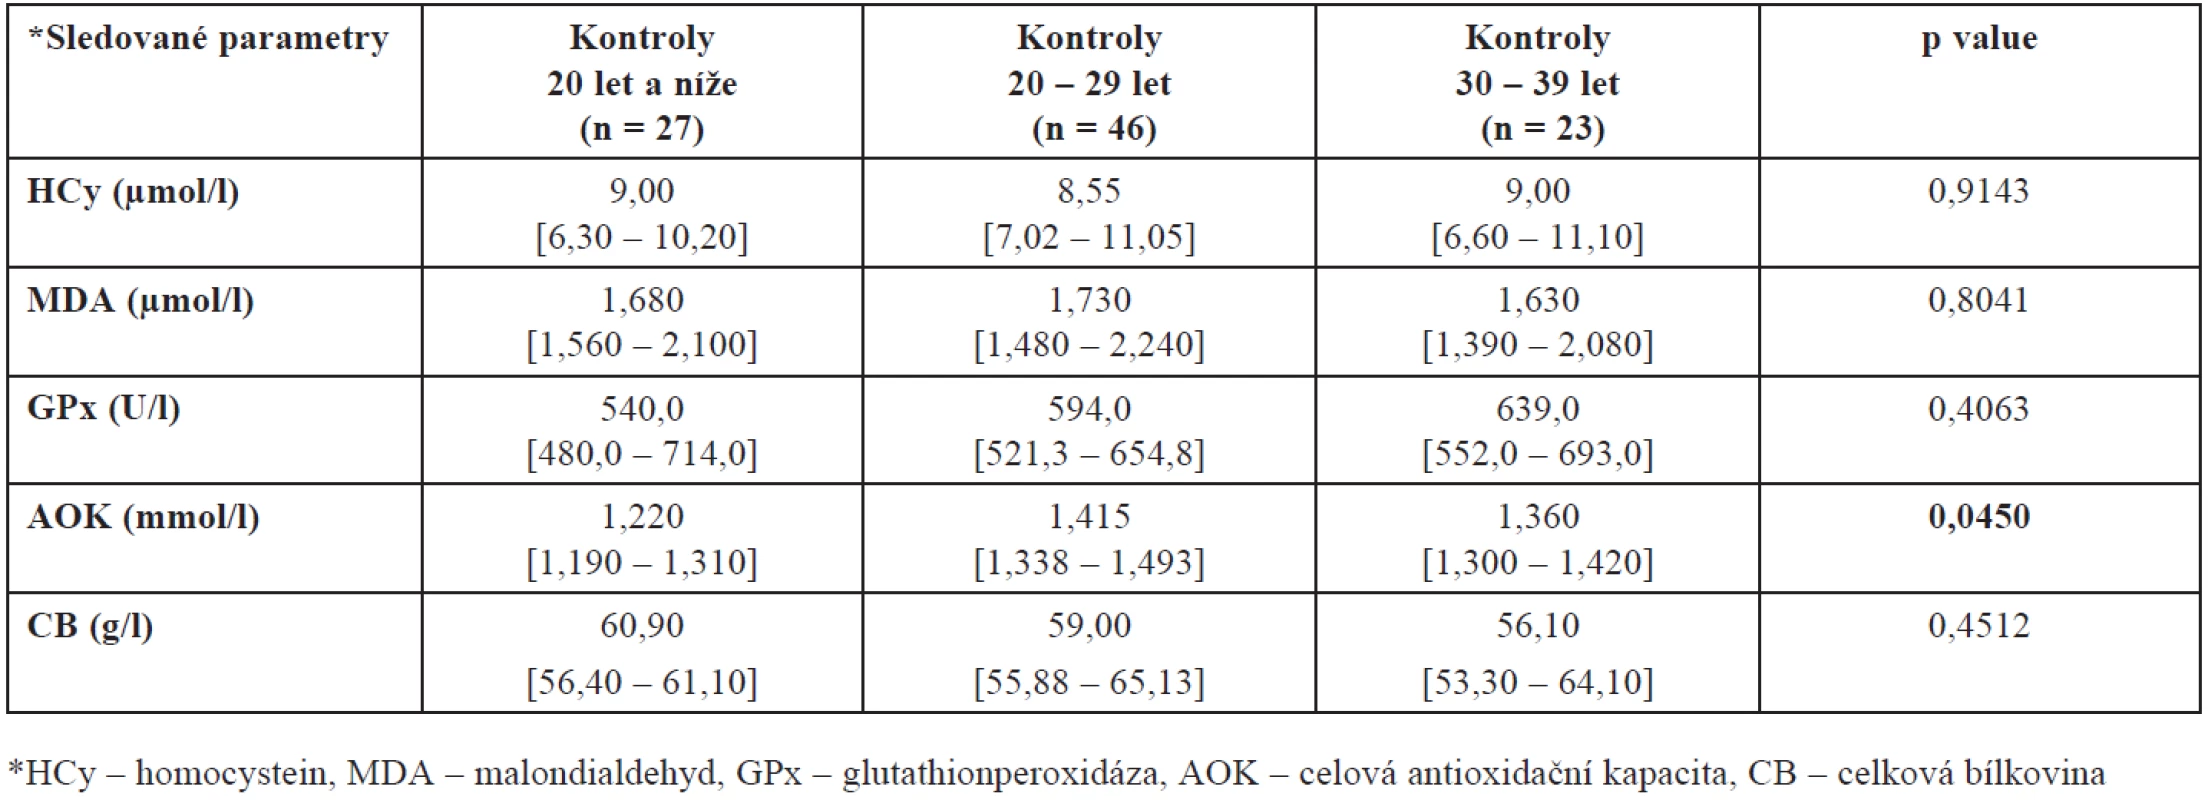 Hladiny HCy, MDA, GPx, AOK a CB ve folikulární tekutině kontrolní skupiny zdravých dárkyň oocytů v závislosti na věku
(hodnoty jsou uvedeny jako medián a interkvartilové rozpětí)